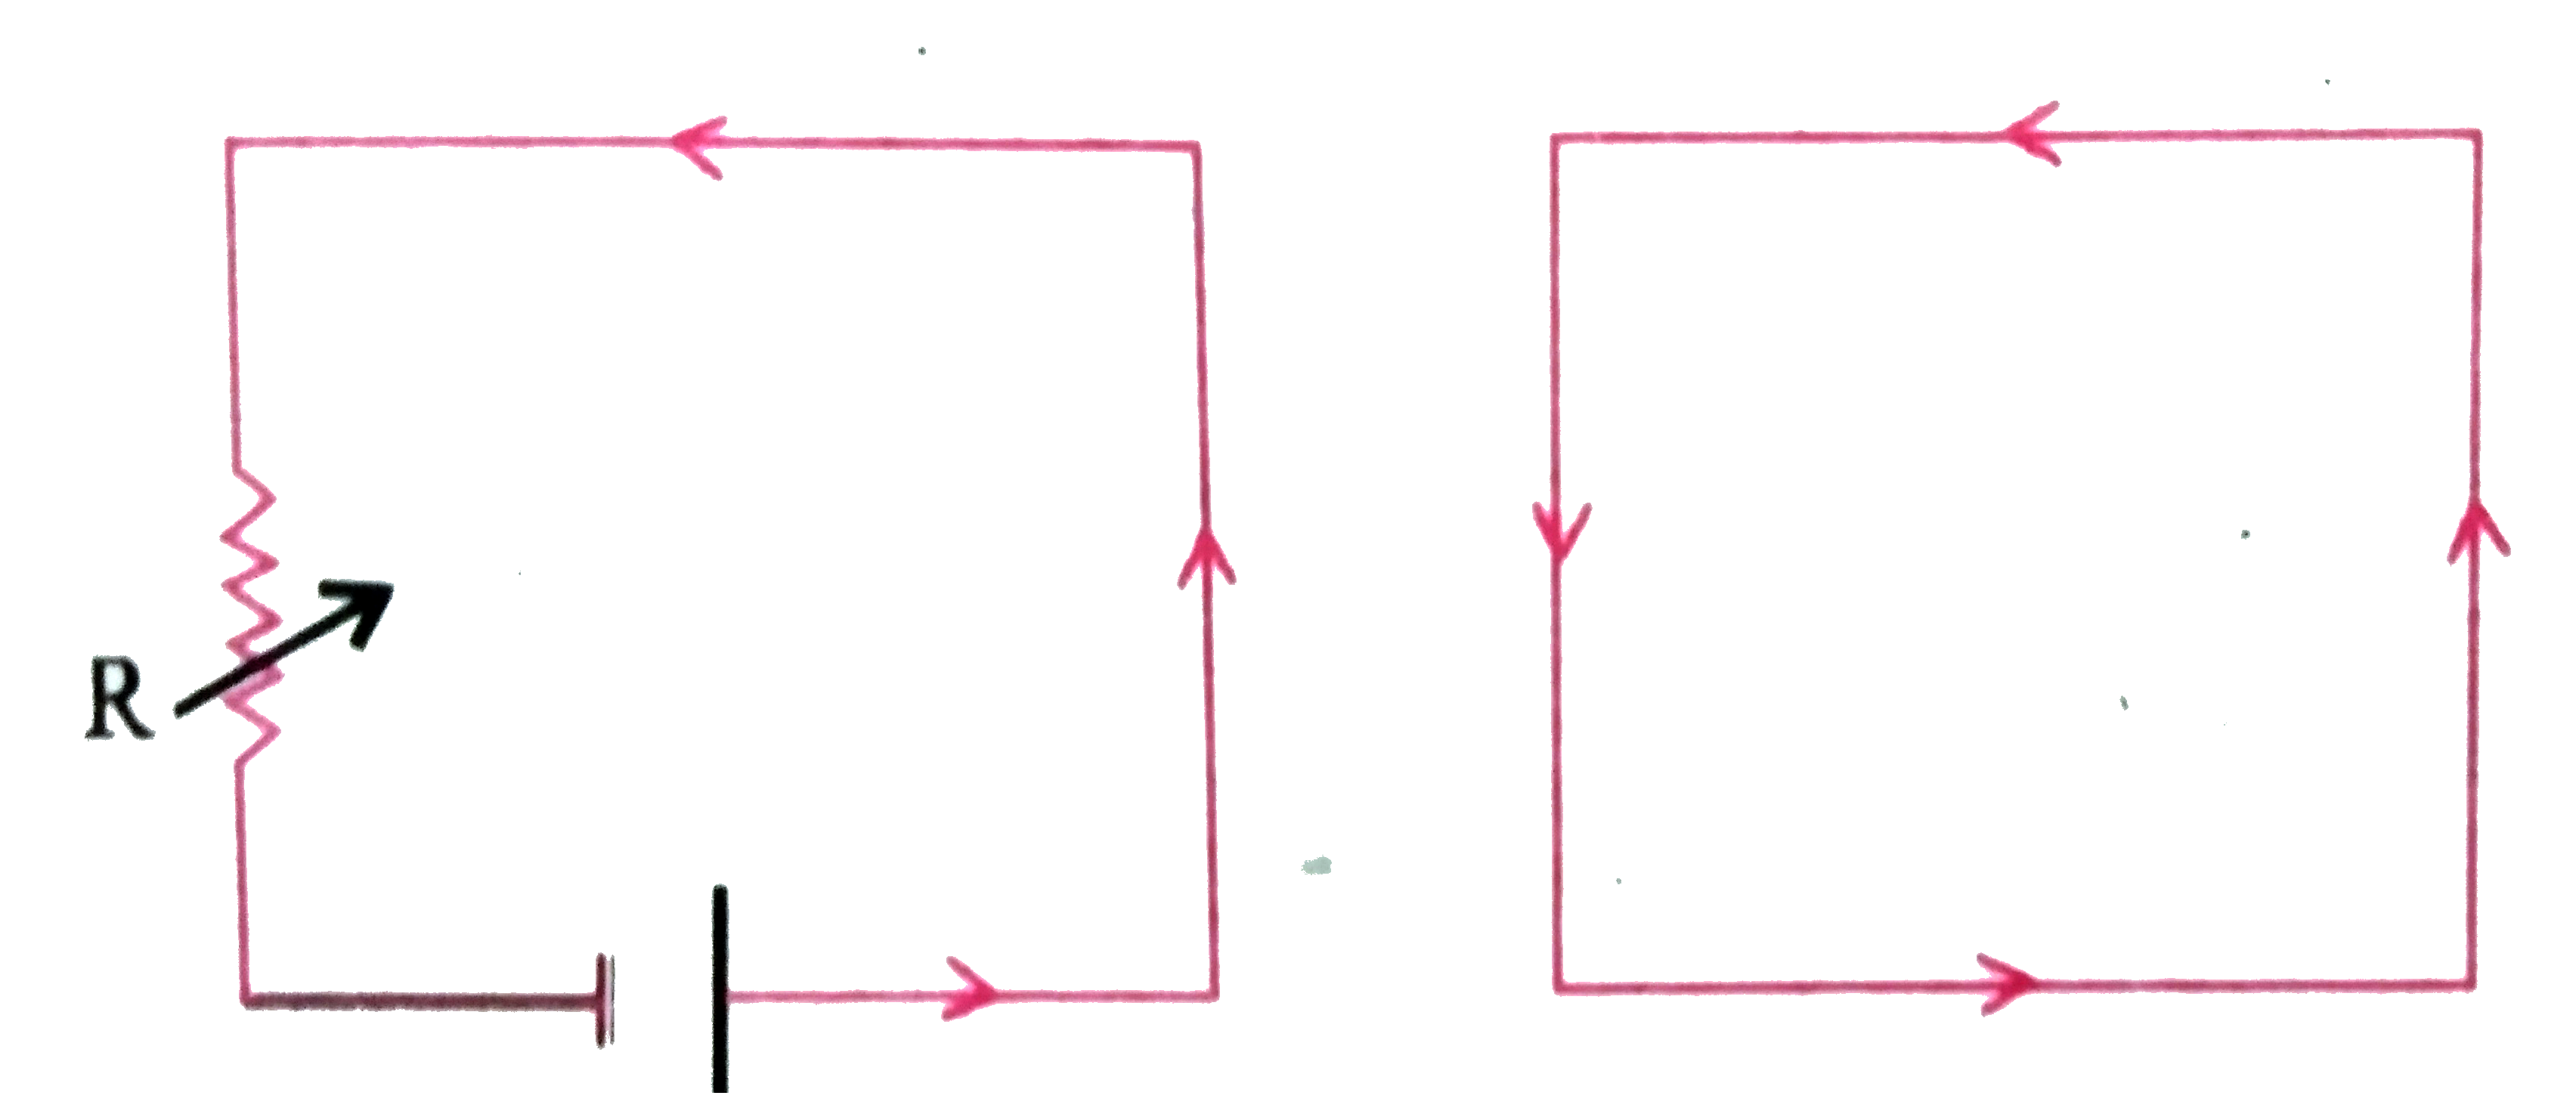 यदि निम्न चित्र (a) में प्रतिरोध  R  का मान घटाये तो चित्र   b में प्रेरित धारा की दिशा क्या होगी ?